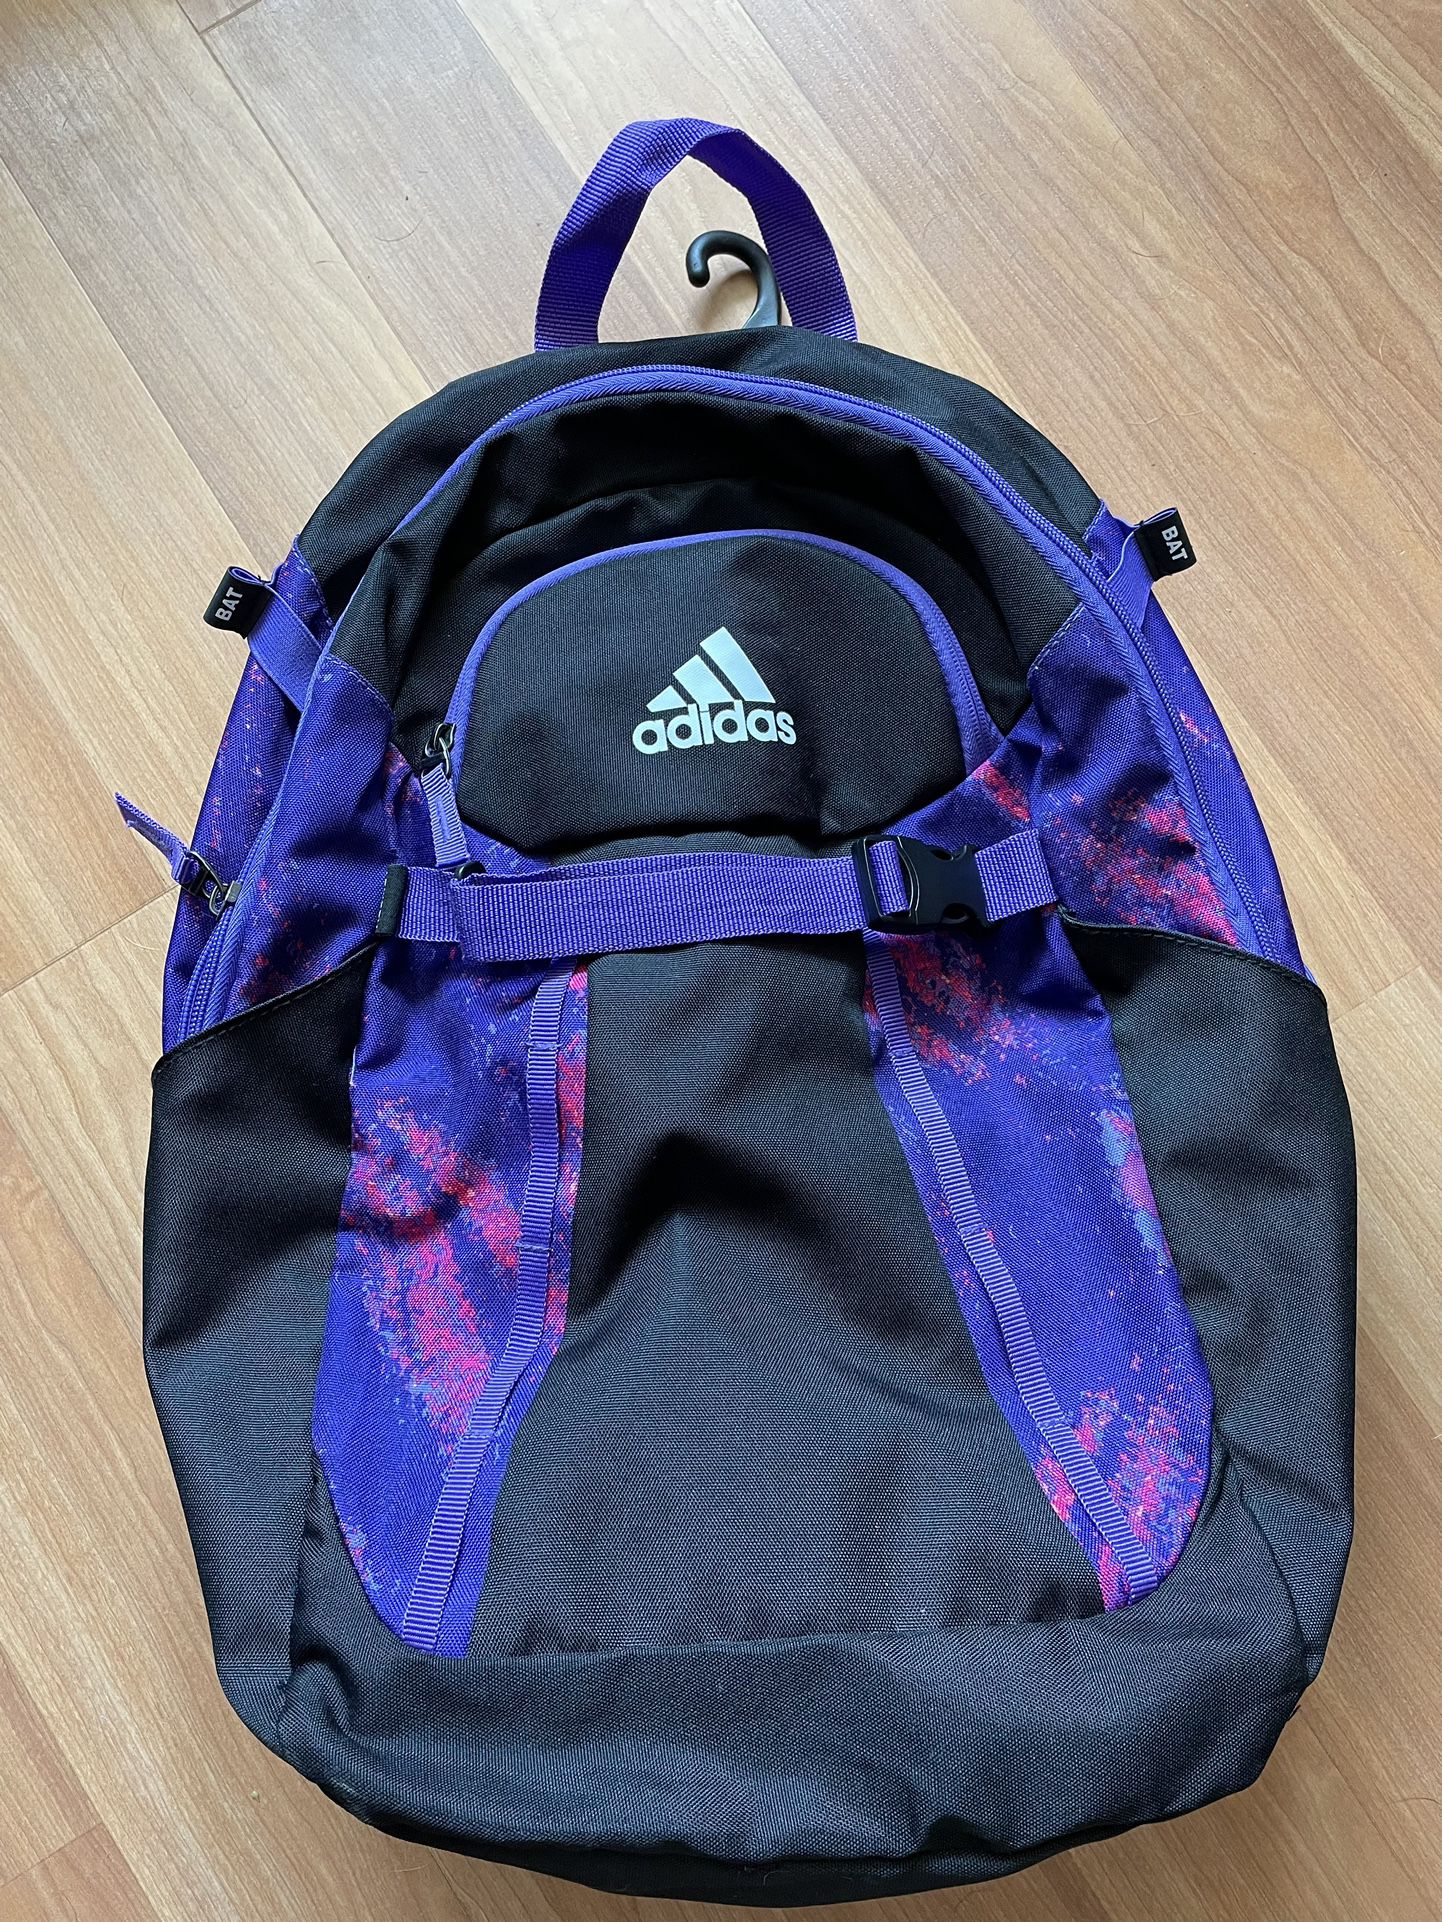 Adidas Softball Bag